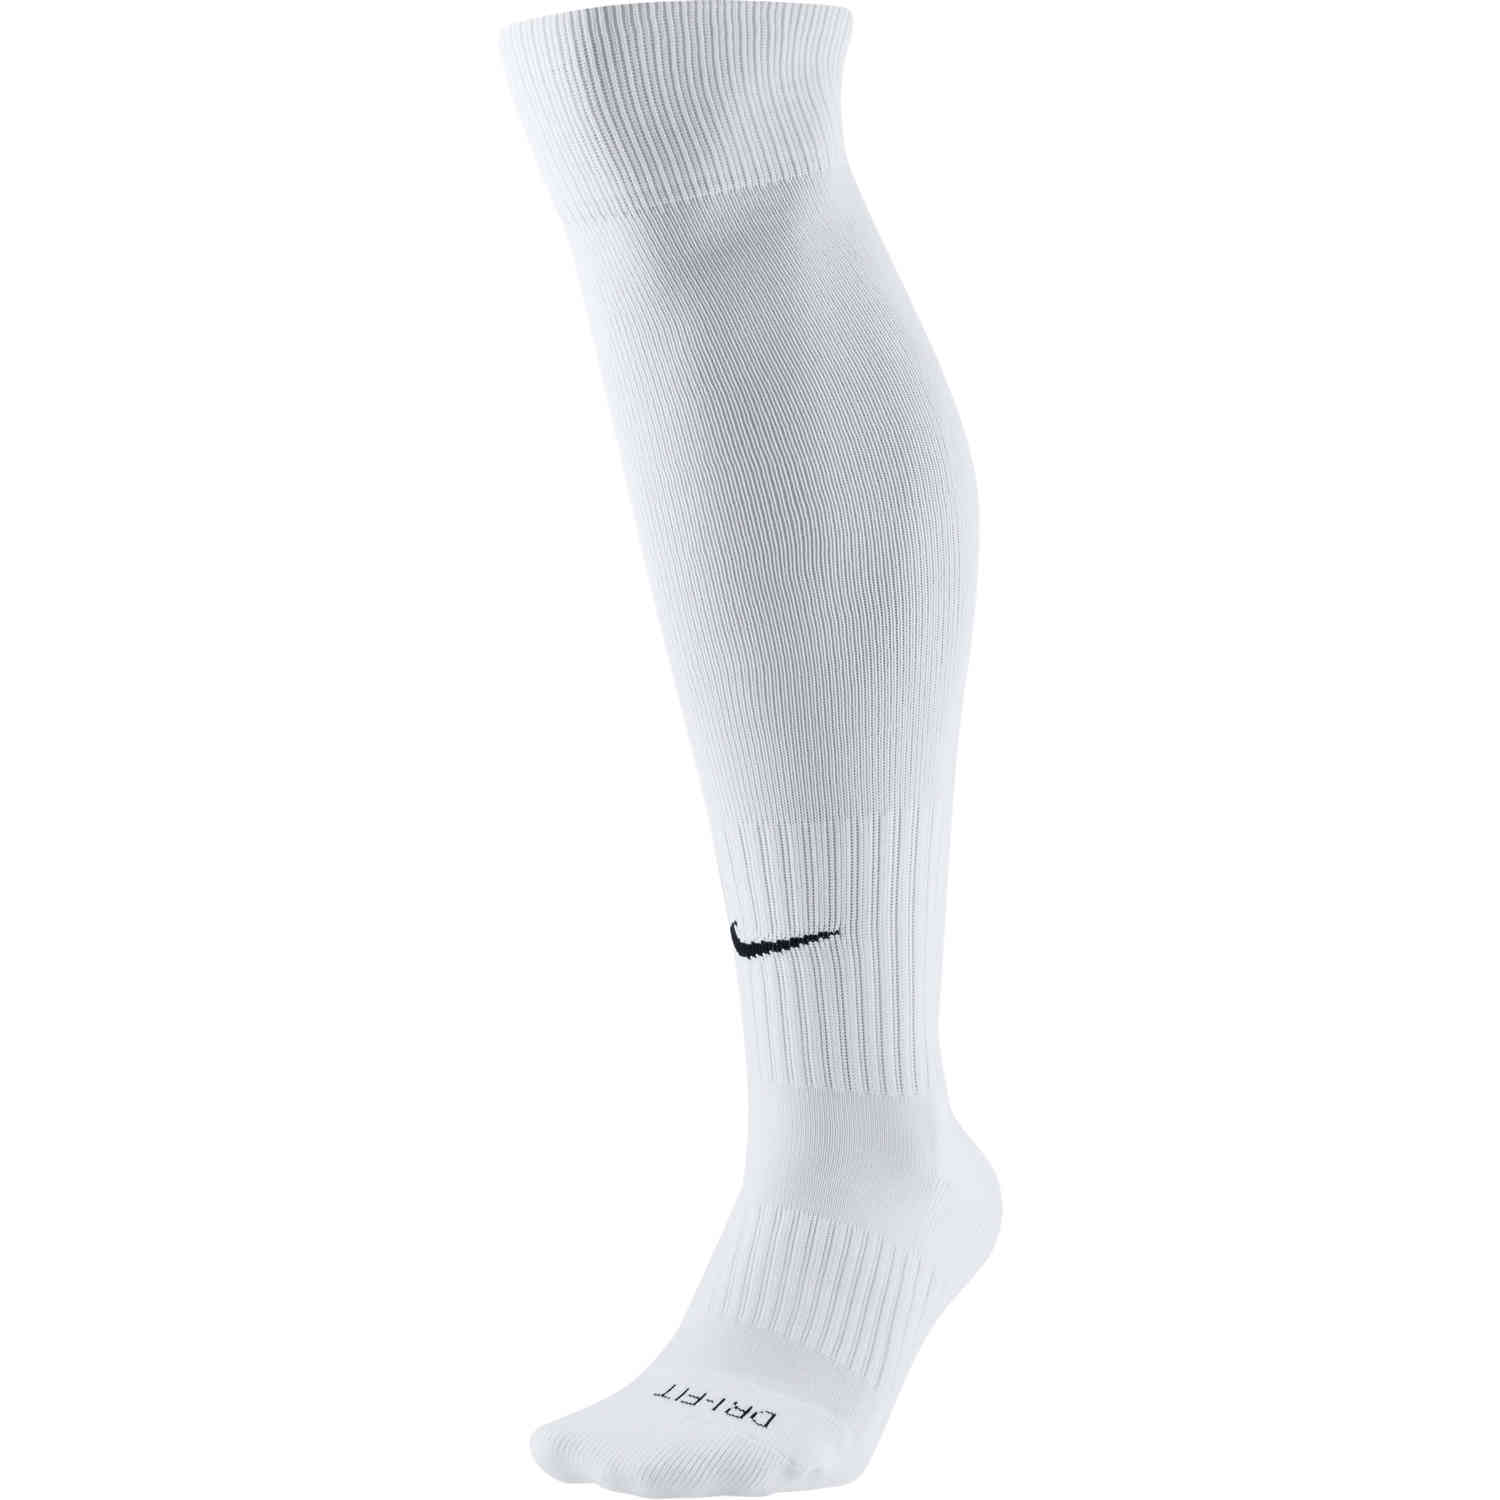 Nike Classic II Team Soccer Socks - White - Soccer Master